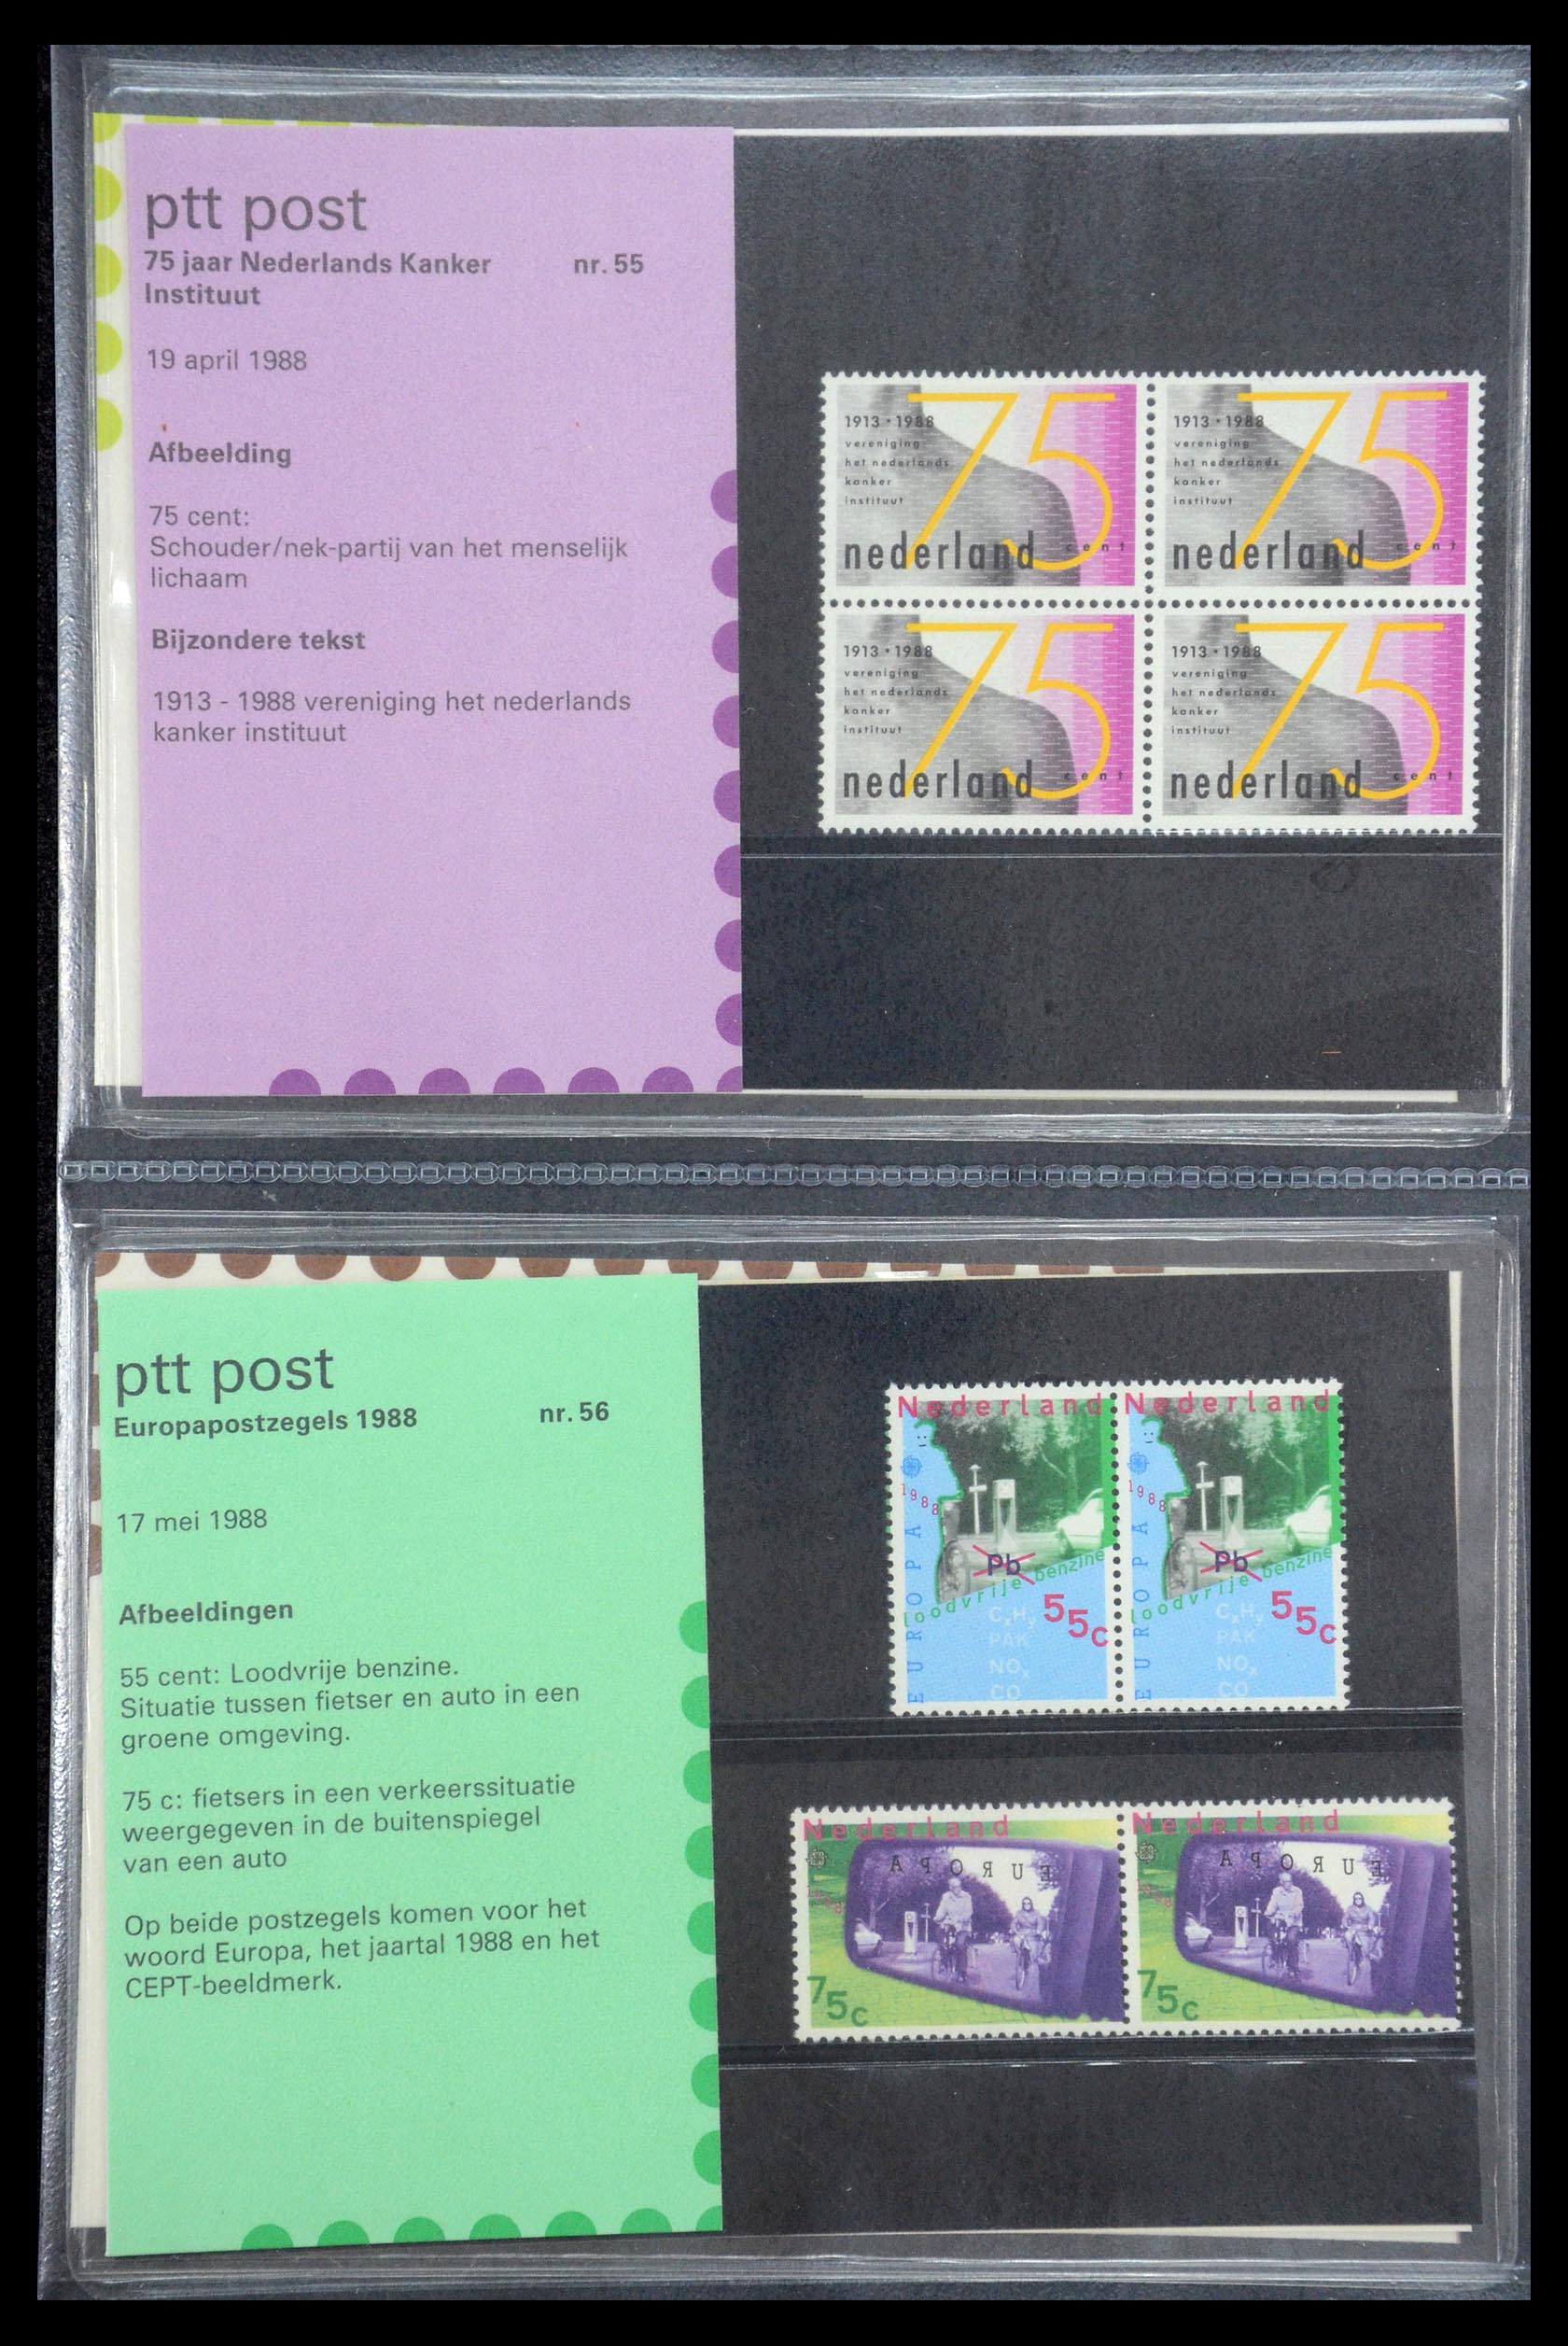 35187 028 - Stamp Collection 35187 Netherlands PTT presentation packs 1982-2019!